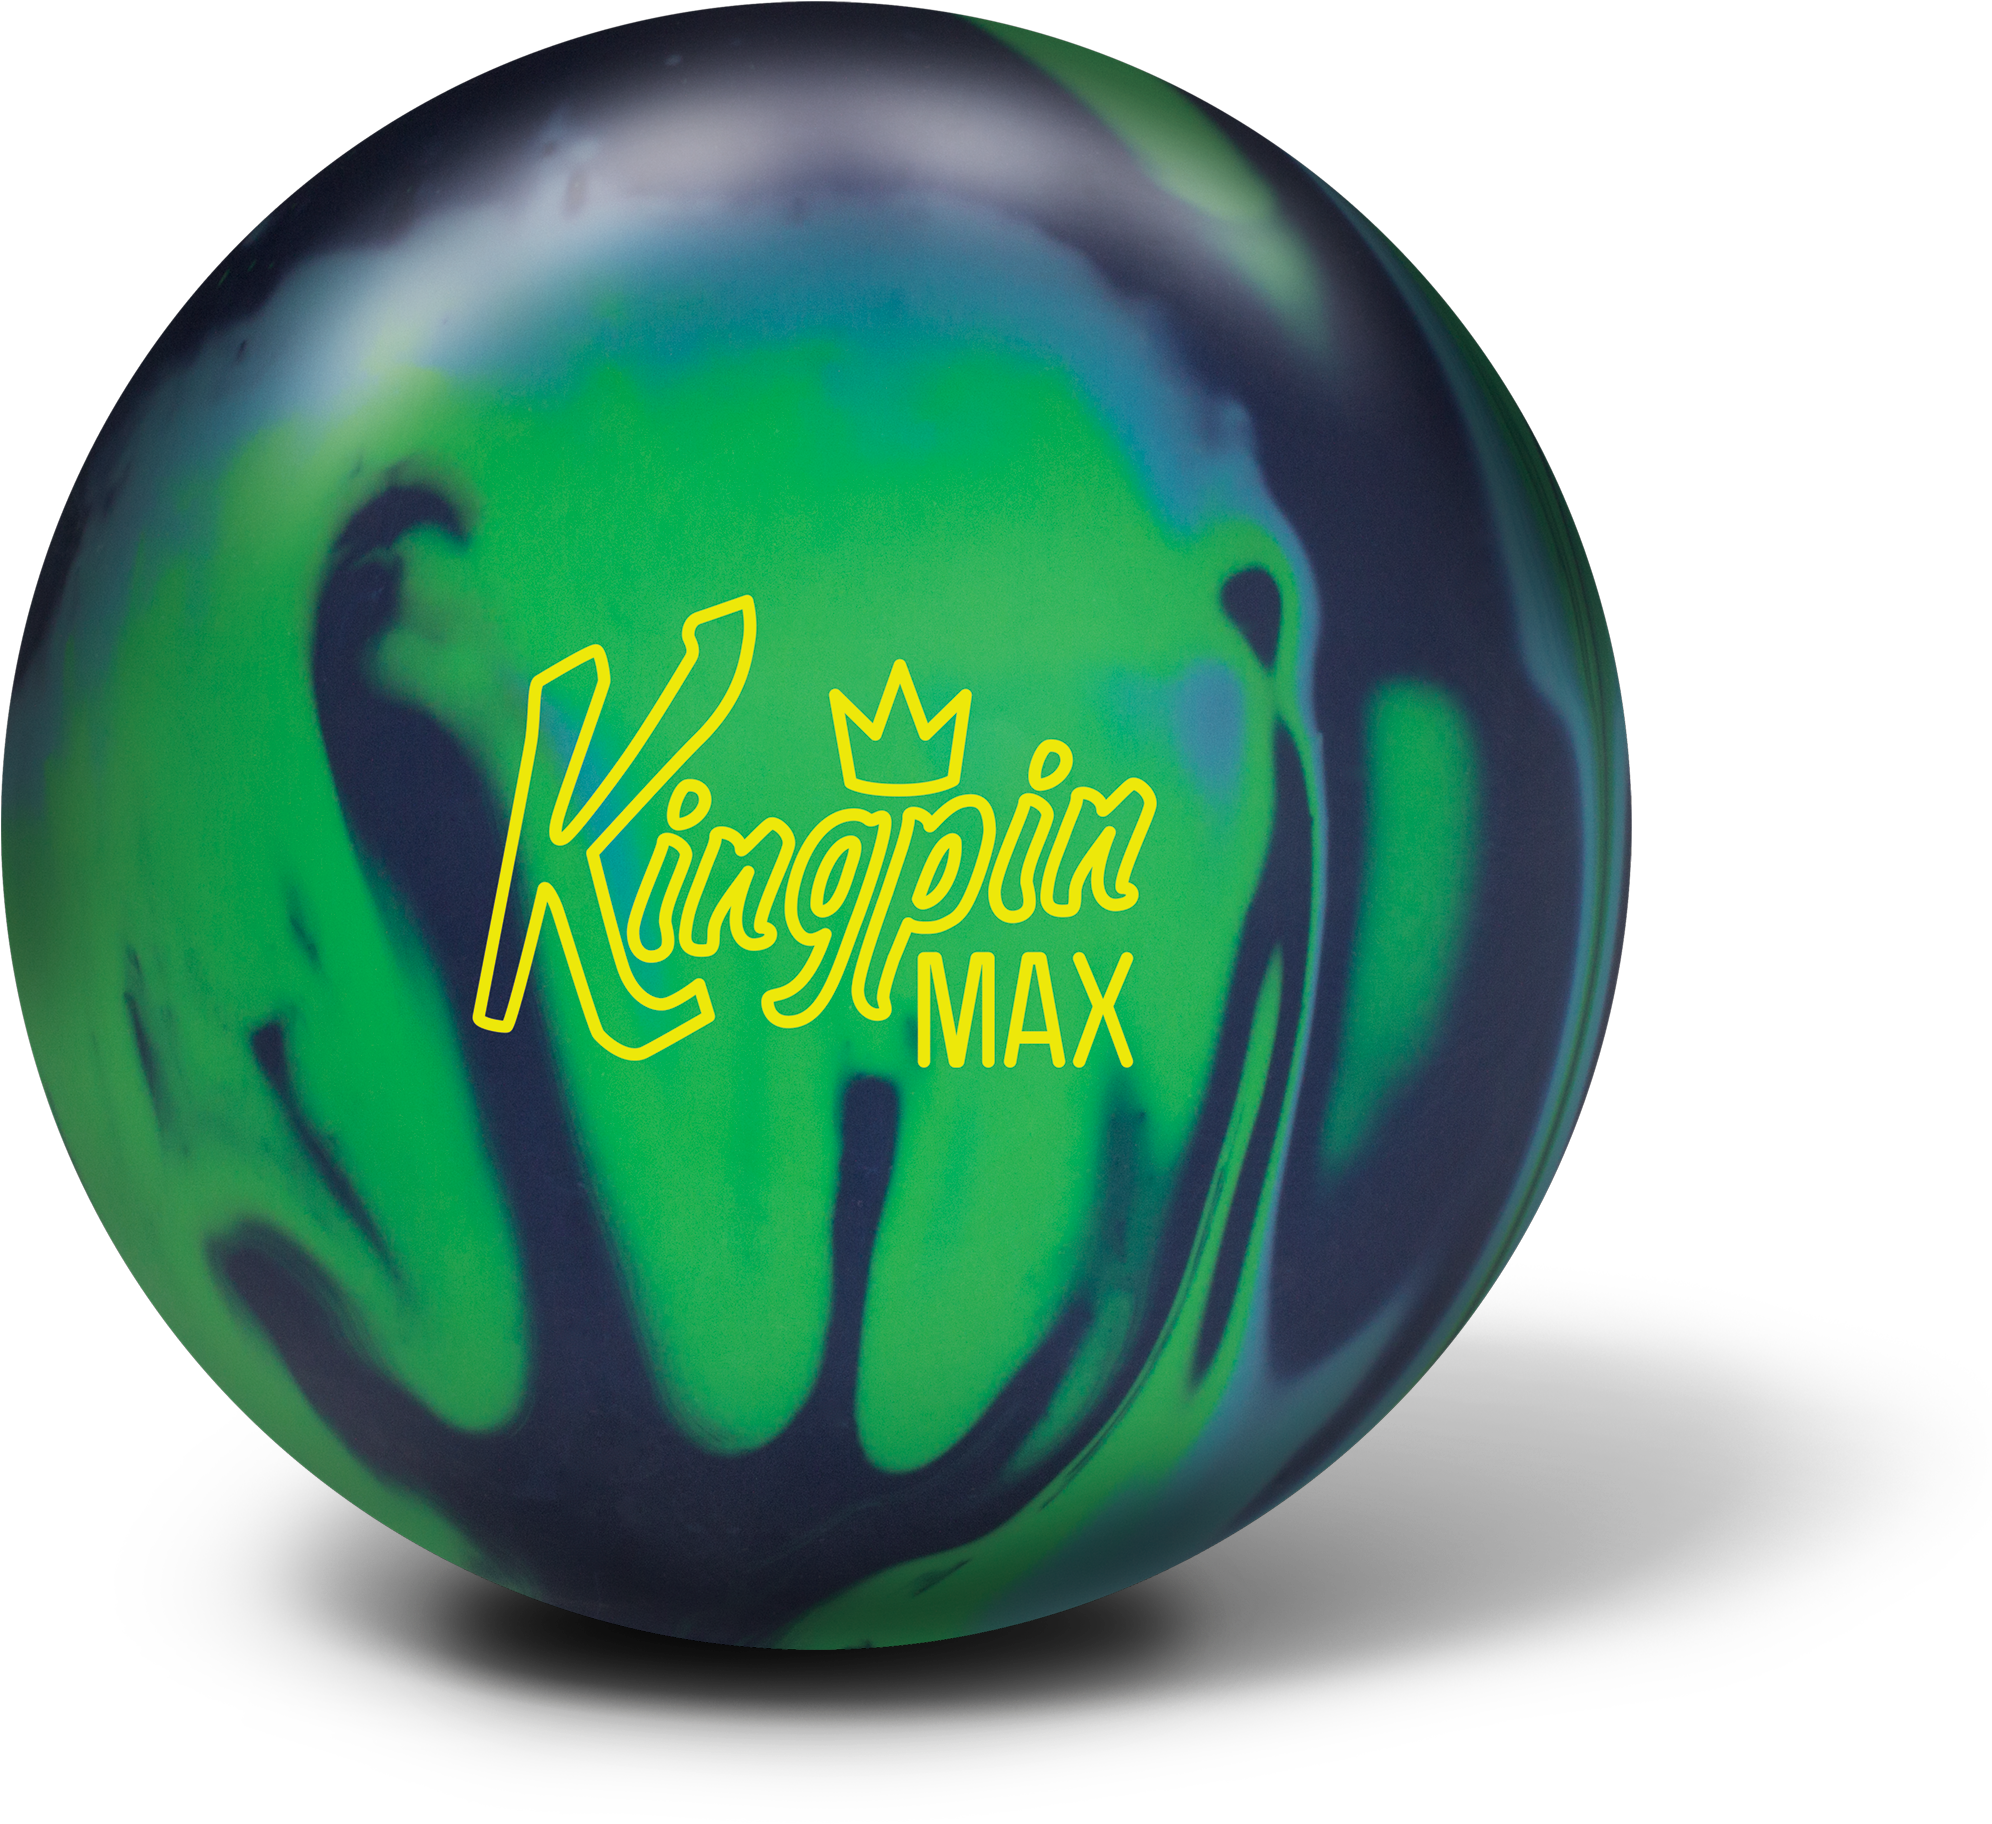 Kingpin Max Bowling Ball PNG image